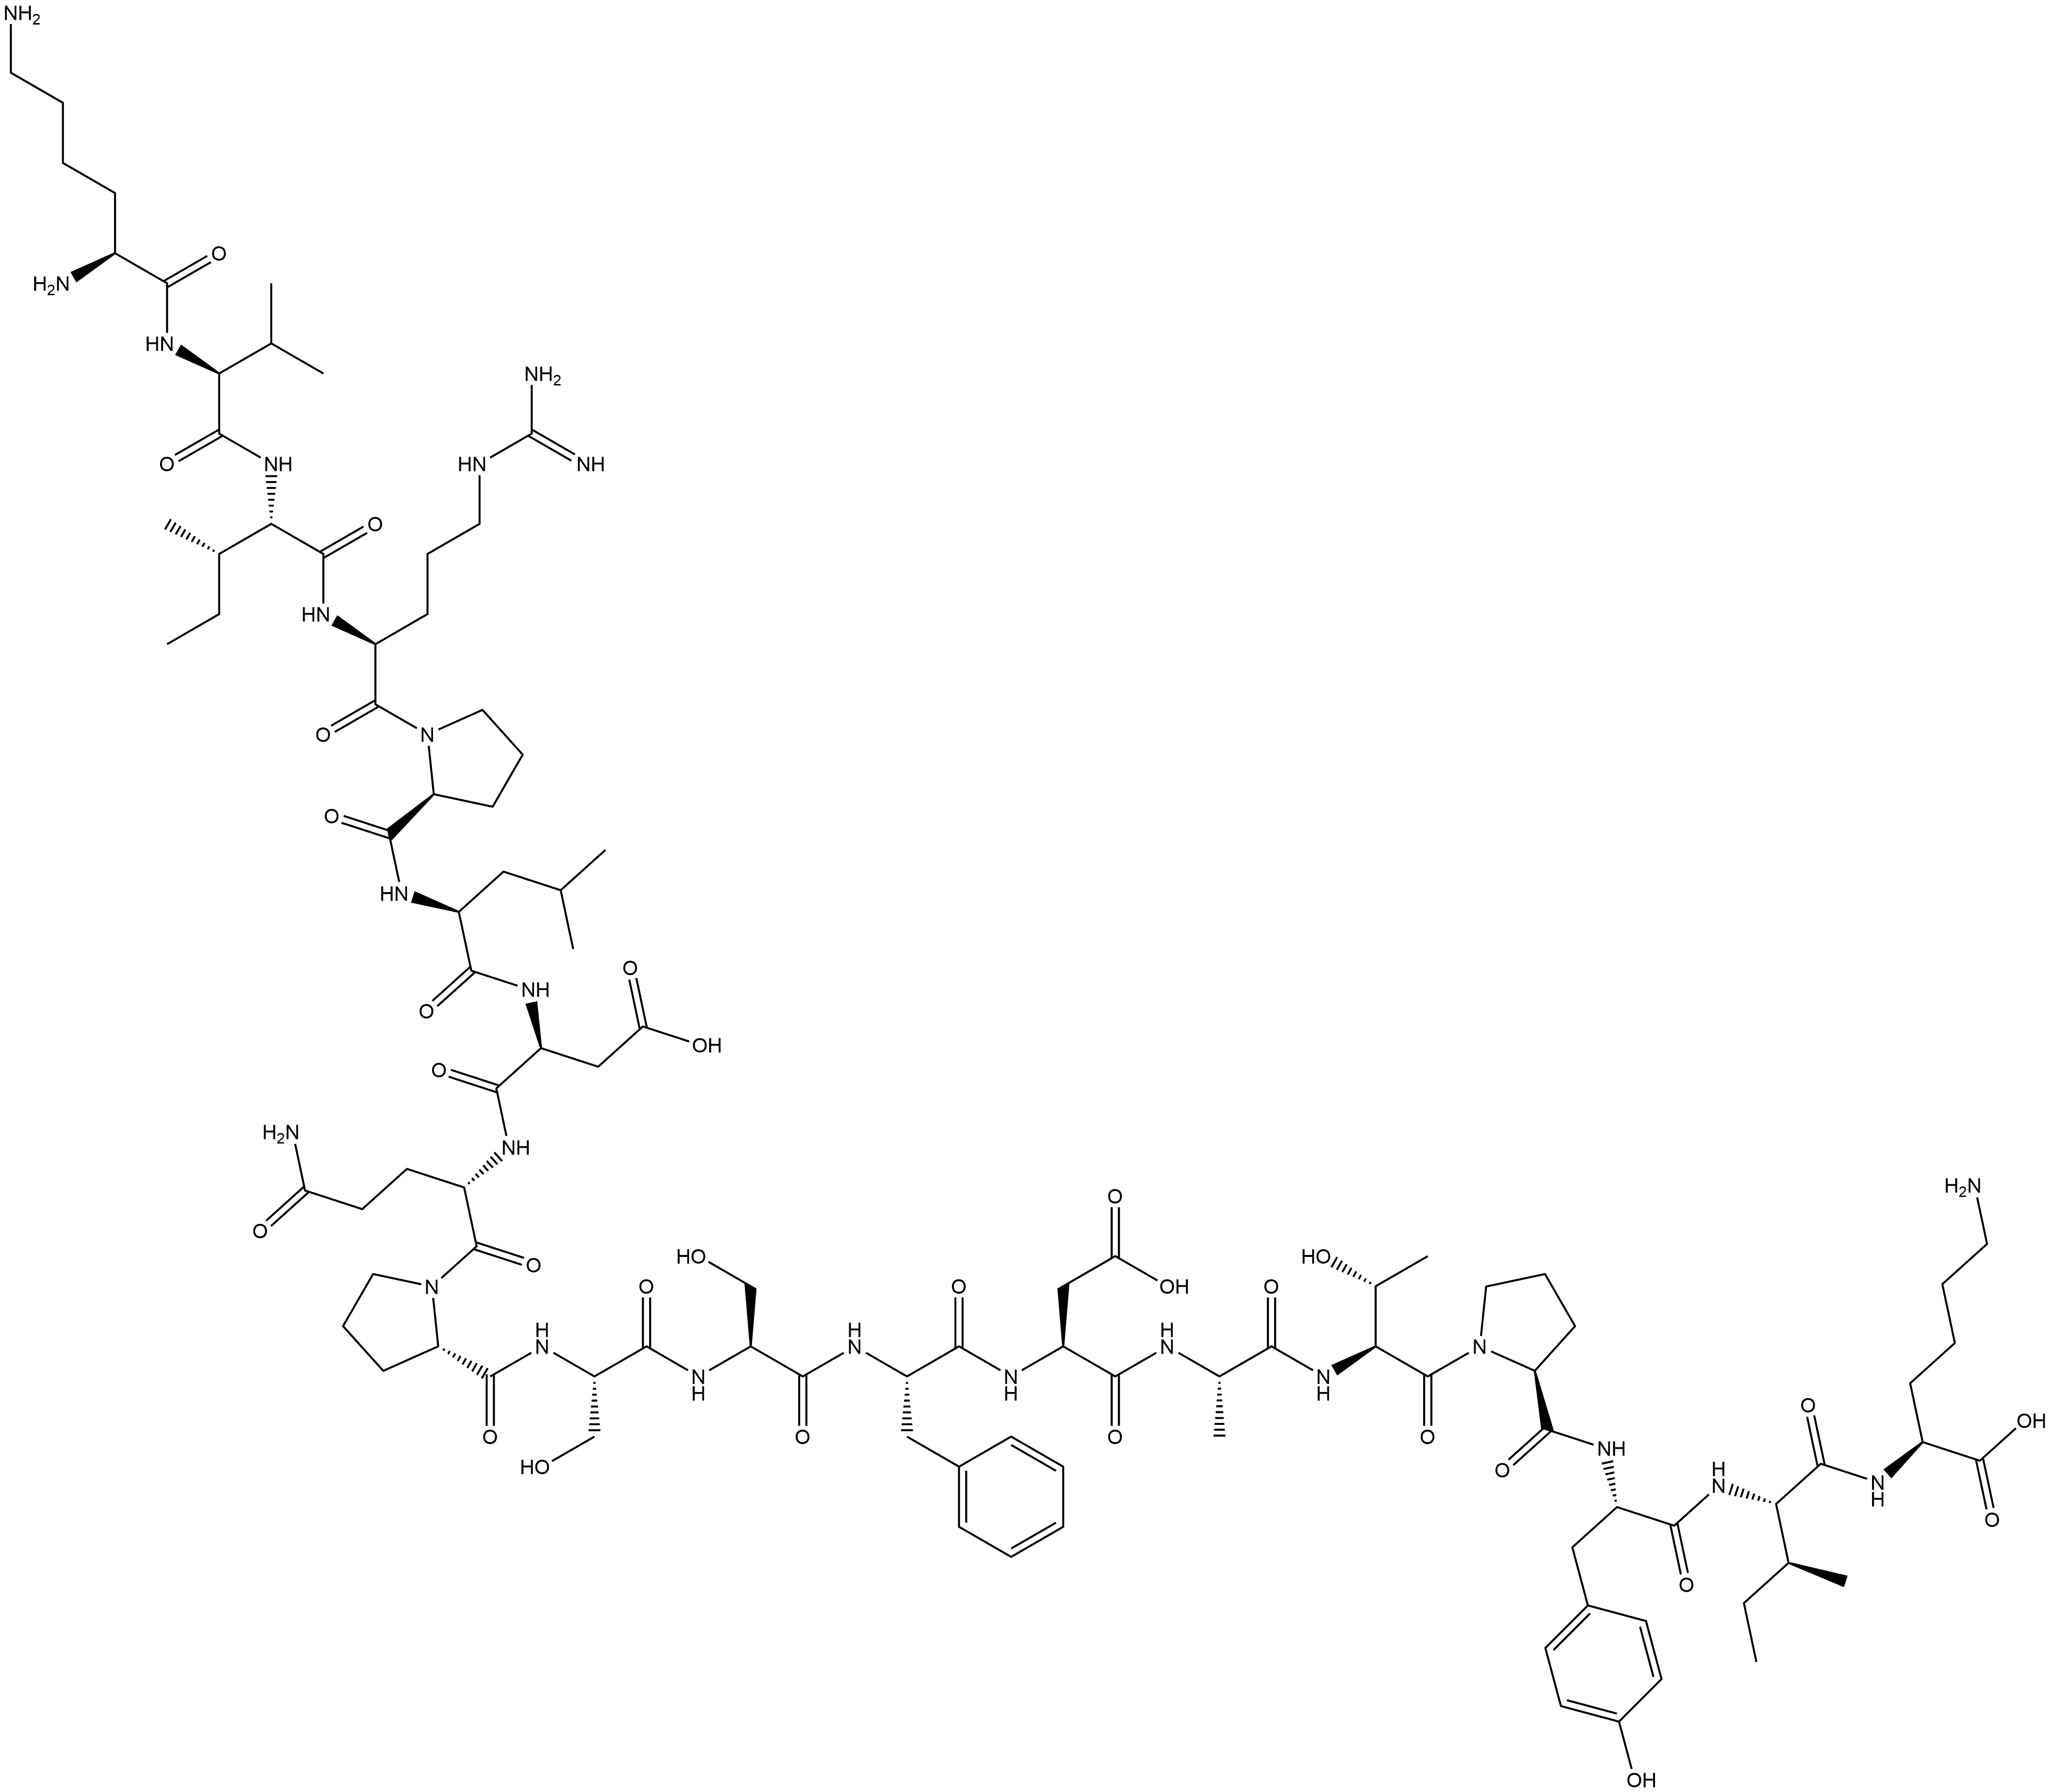 2243207-02-3 L-Lysine, L-lysyl-L-valyl-L-isoleucyl-L-arginyl-L-prolyl-L-leucyl-L-α-aspartyl-L-glutaminyl-L-prolyl-L-seryl-L-seryl-L-phenylalanyl-L-α-aspartyl-L-alanyl-L-threonyl-L-prolyl-L-tyrosyl-L-isoleucyl-